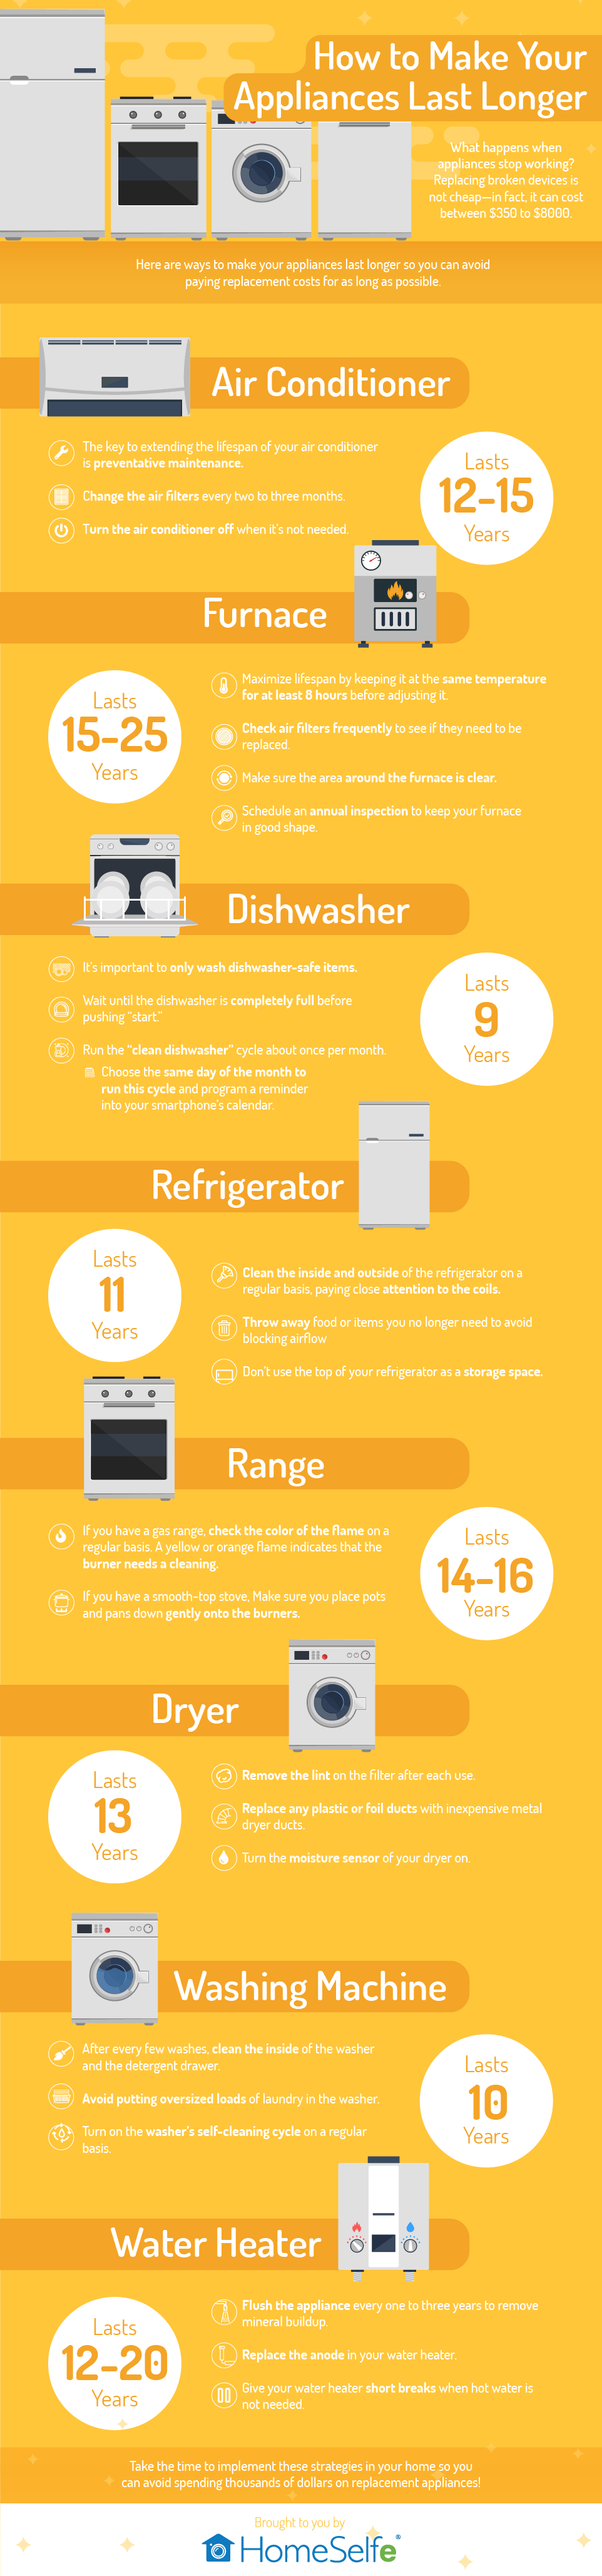 Make Your Appliances Last Longer